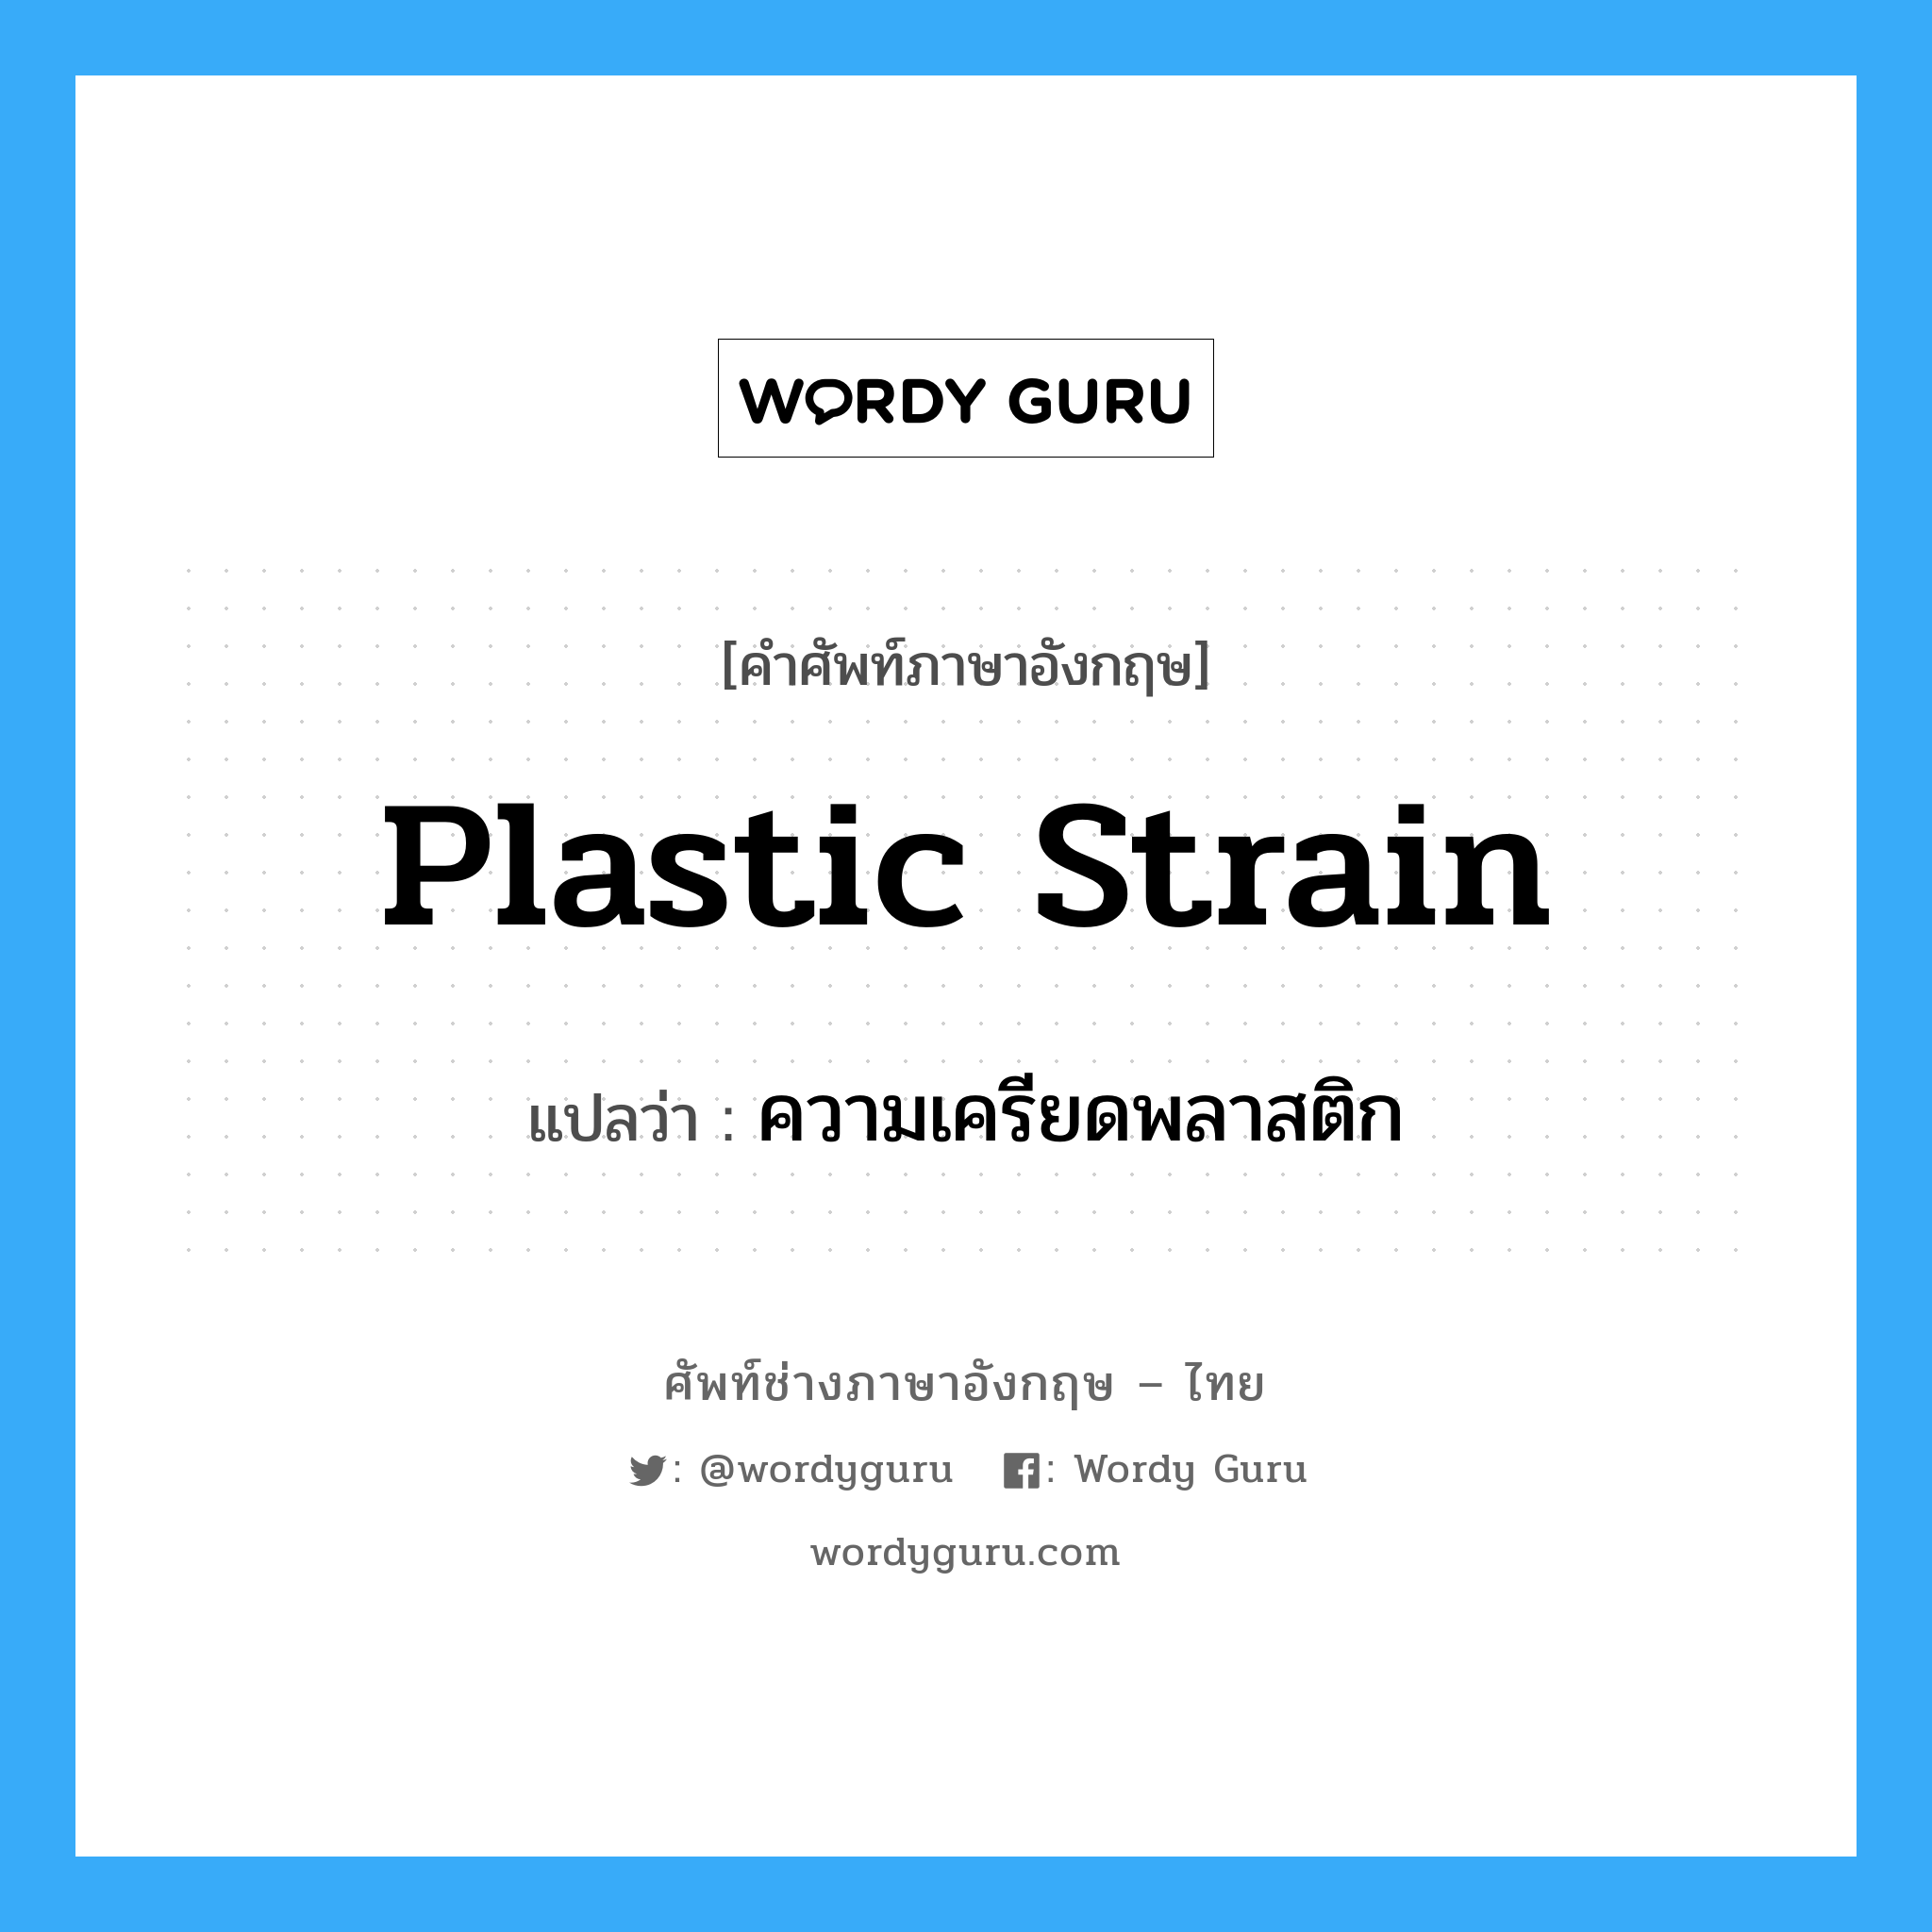 plastic strain แปลว่า?, คำศัพท์ช่างภาษาอังกฤษ - ไทย plastic strain คำศัพท์ภาษาอังกฤษ plastic strain แปลว่า ความเครียดพลาสติก